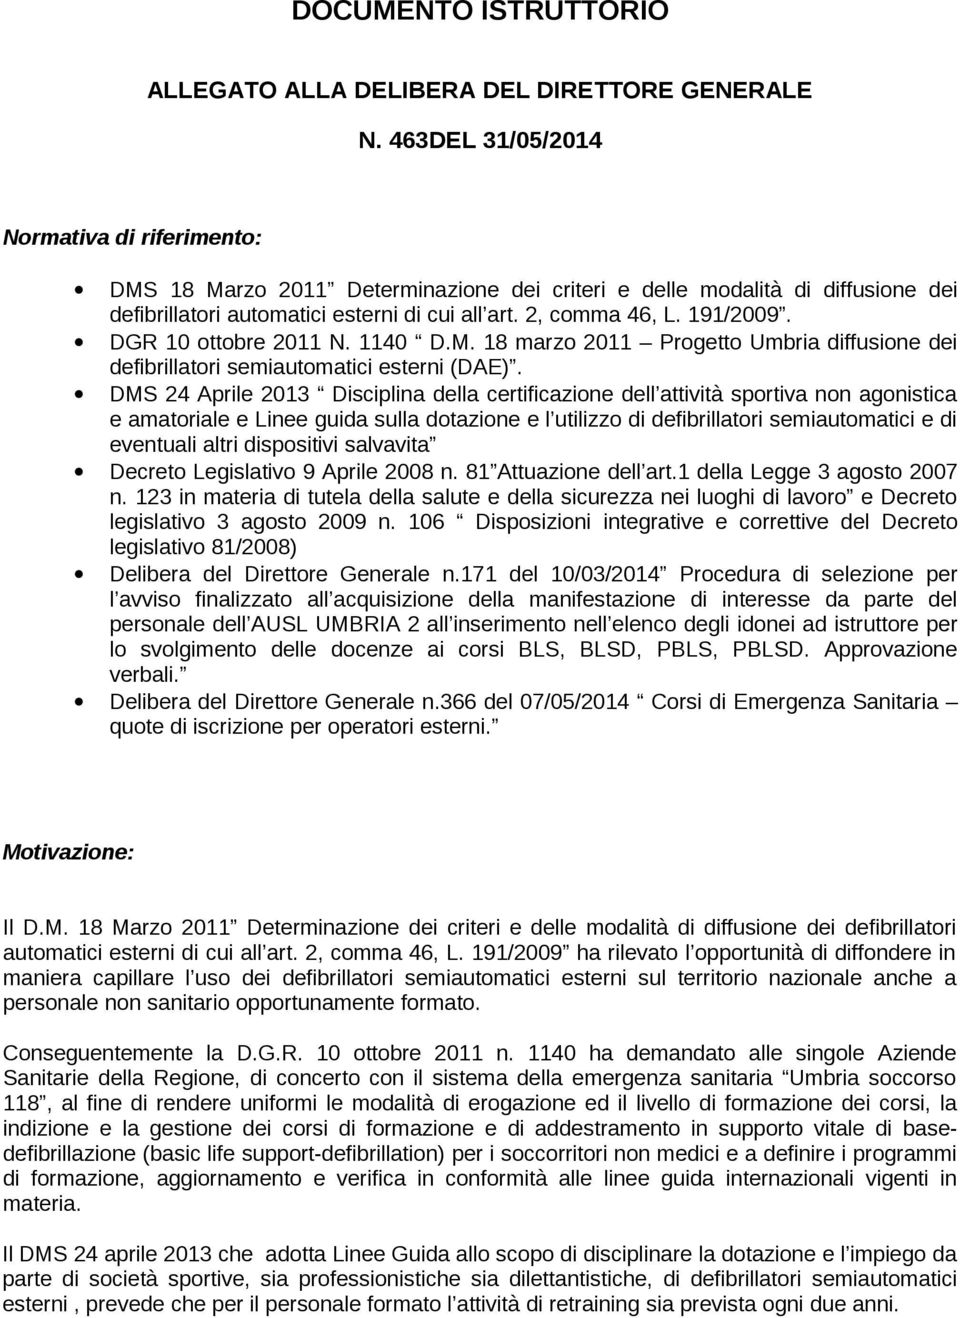 DGR 10 ottobre 2011 N. 1140 D.M. 18 marzo 2011 Progetto Umbria diffusione dei defibrillatori semiautomatici esterni (DAE).